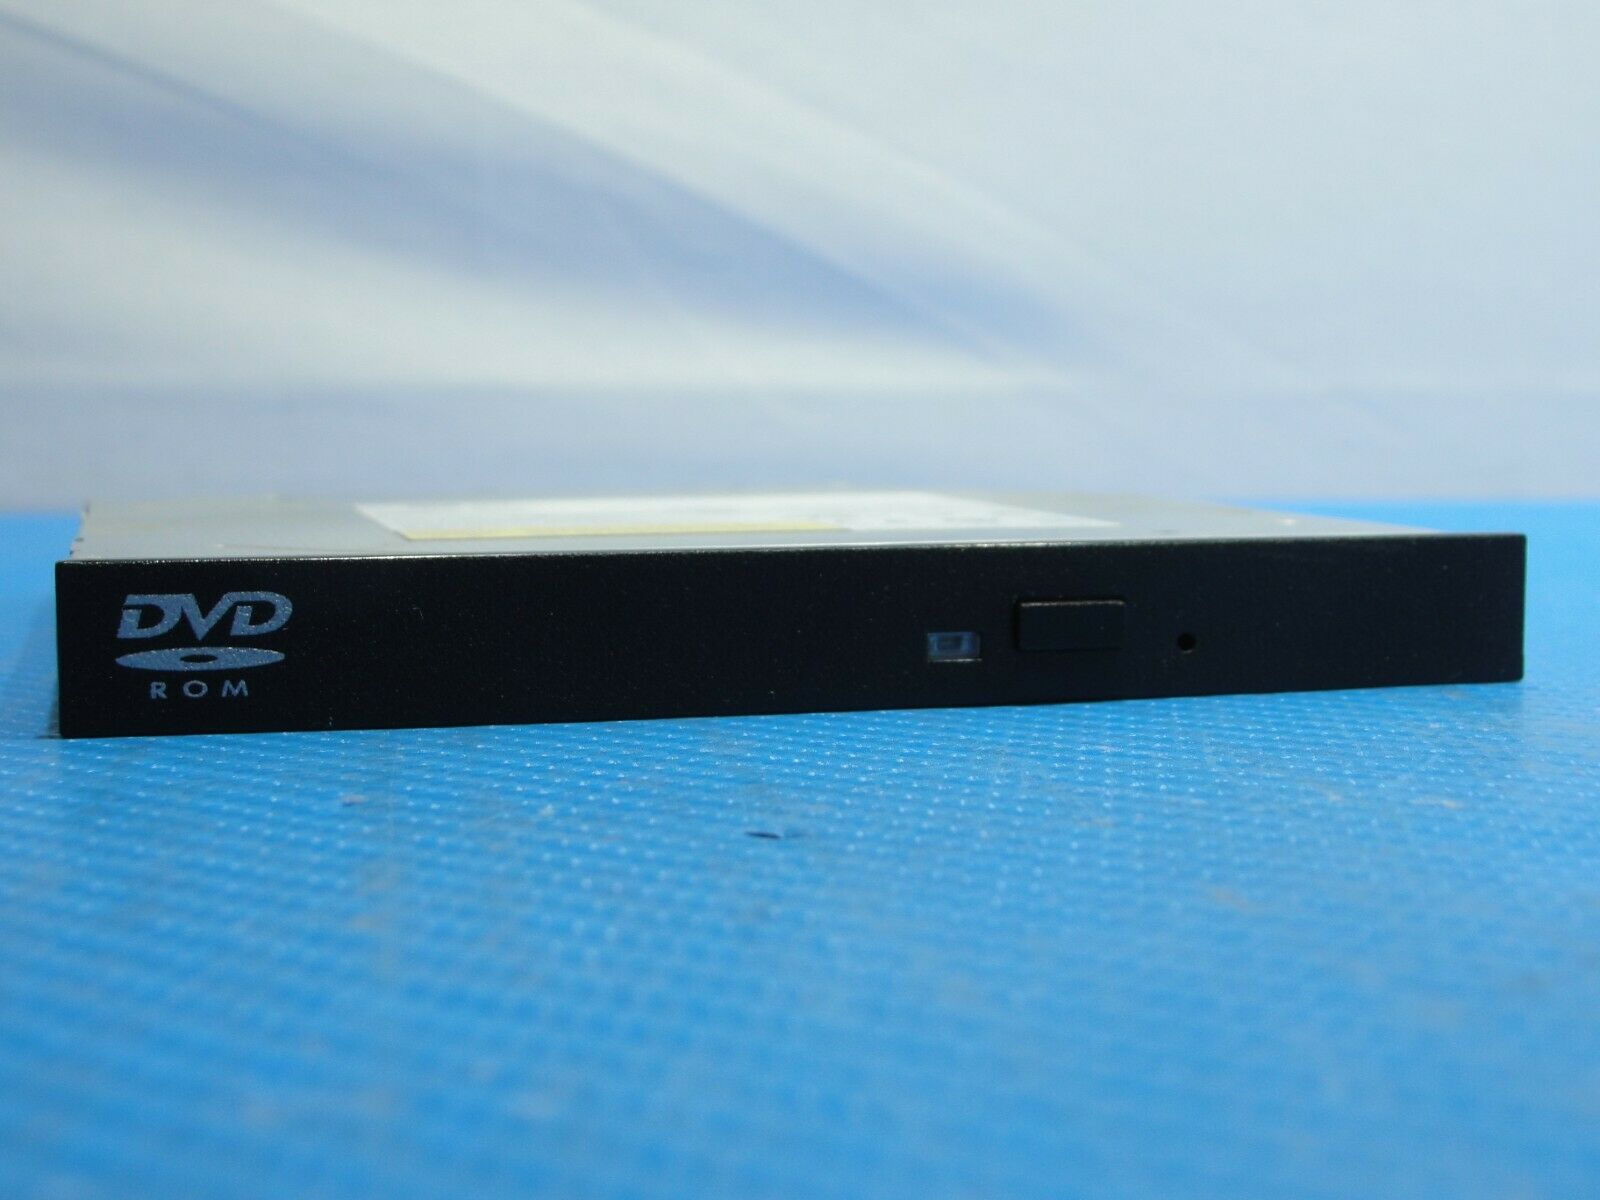 Dell OptiPlex 7010 Genuine Desktop  DVD-ROM Burner Drive DS-8D9SH R7J8C - Laptop Parts - Buy Authentic Computer Parts - Top Seller Ebay